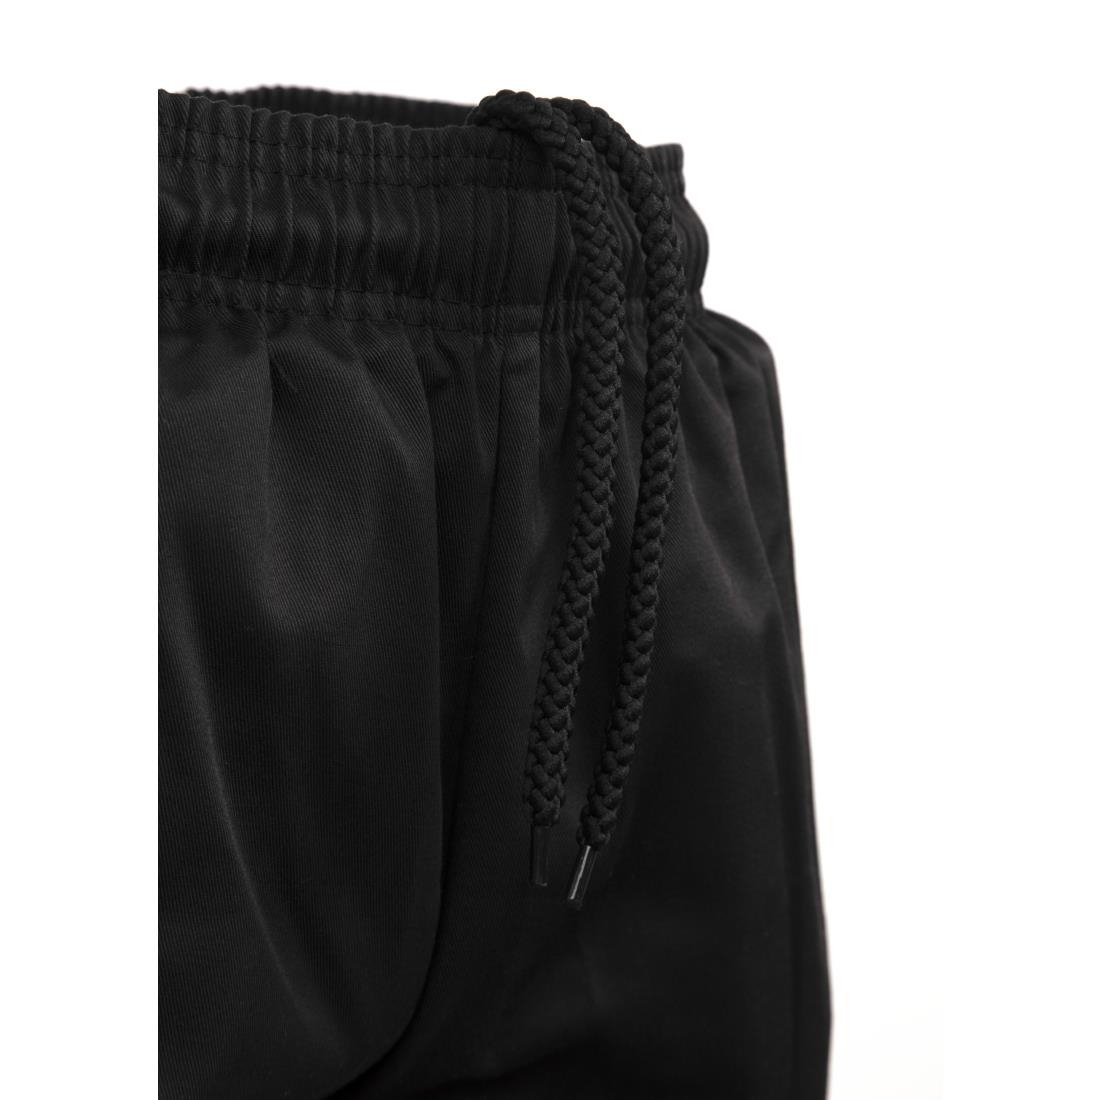 Pantalon cargo Whites noir XL